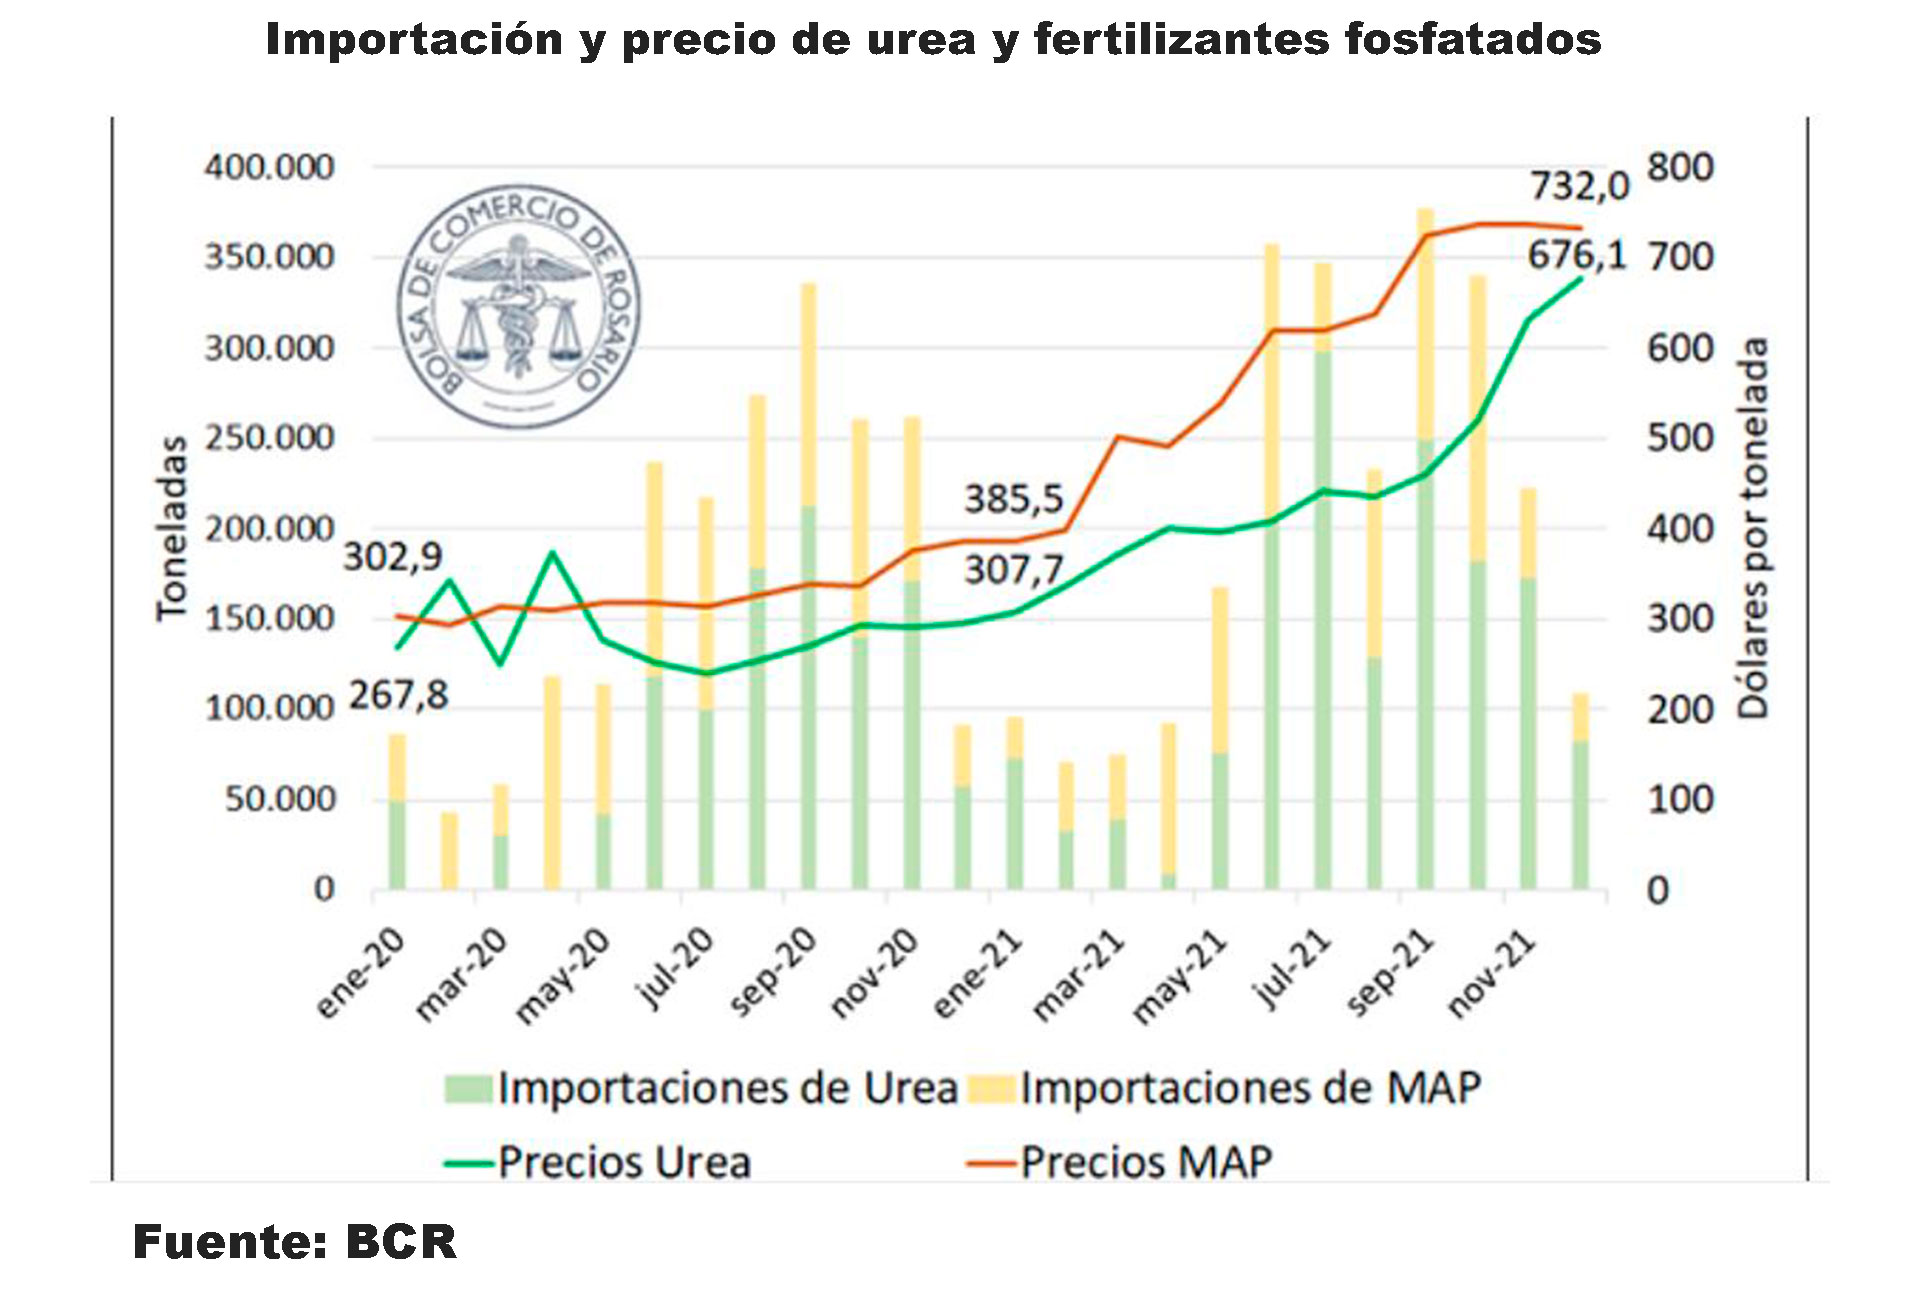 Los fertilizantes nitrogenados y fosfatados son los principales de la dieta de fertilización del suelo agrícola argentino